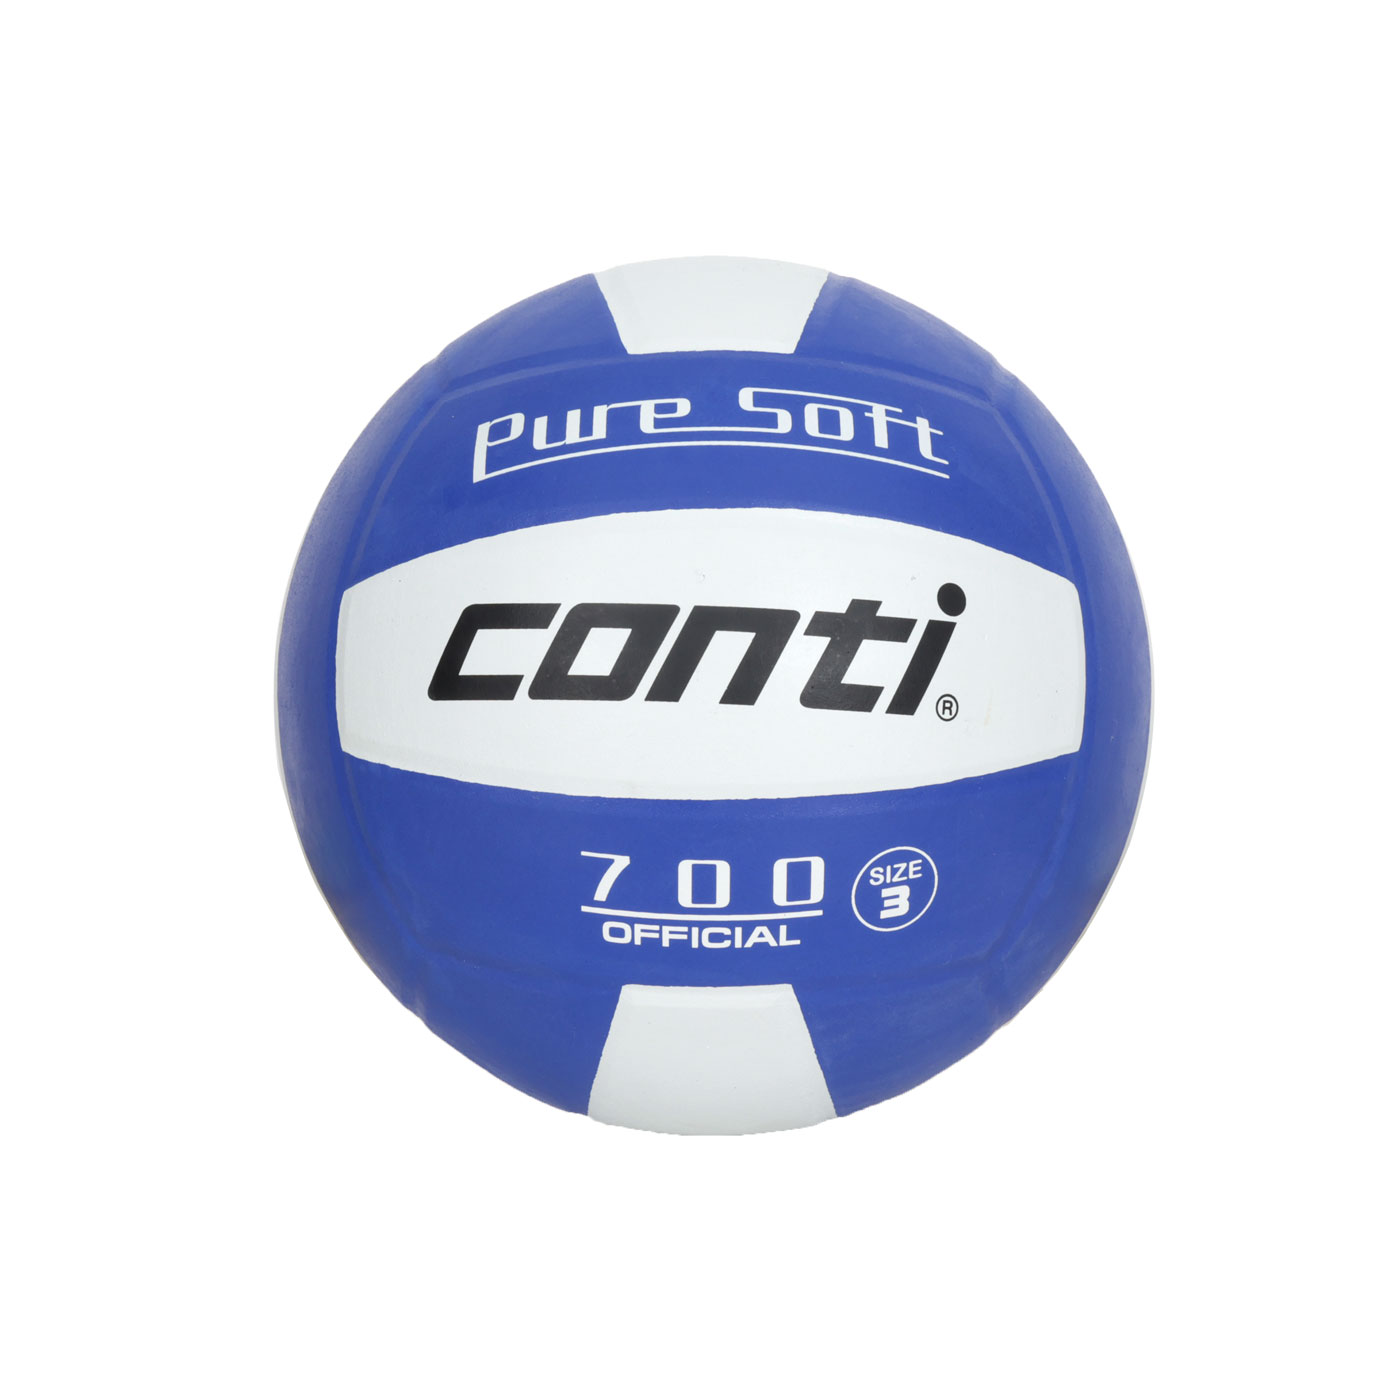 詠冠conti 3號超軟橡膠排球-雙色系列 CONTI V700-3-WB - 藍白